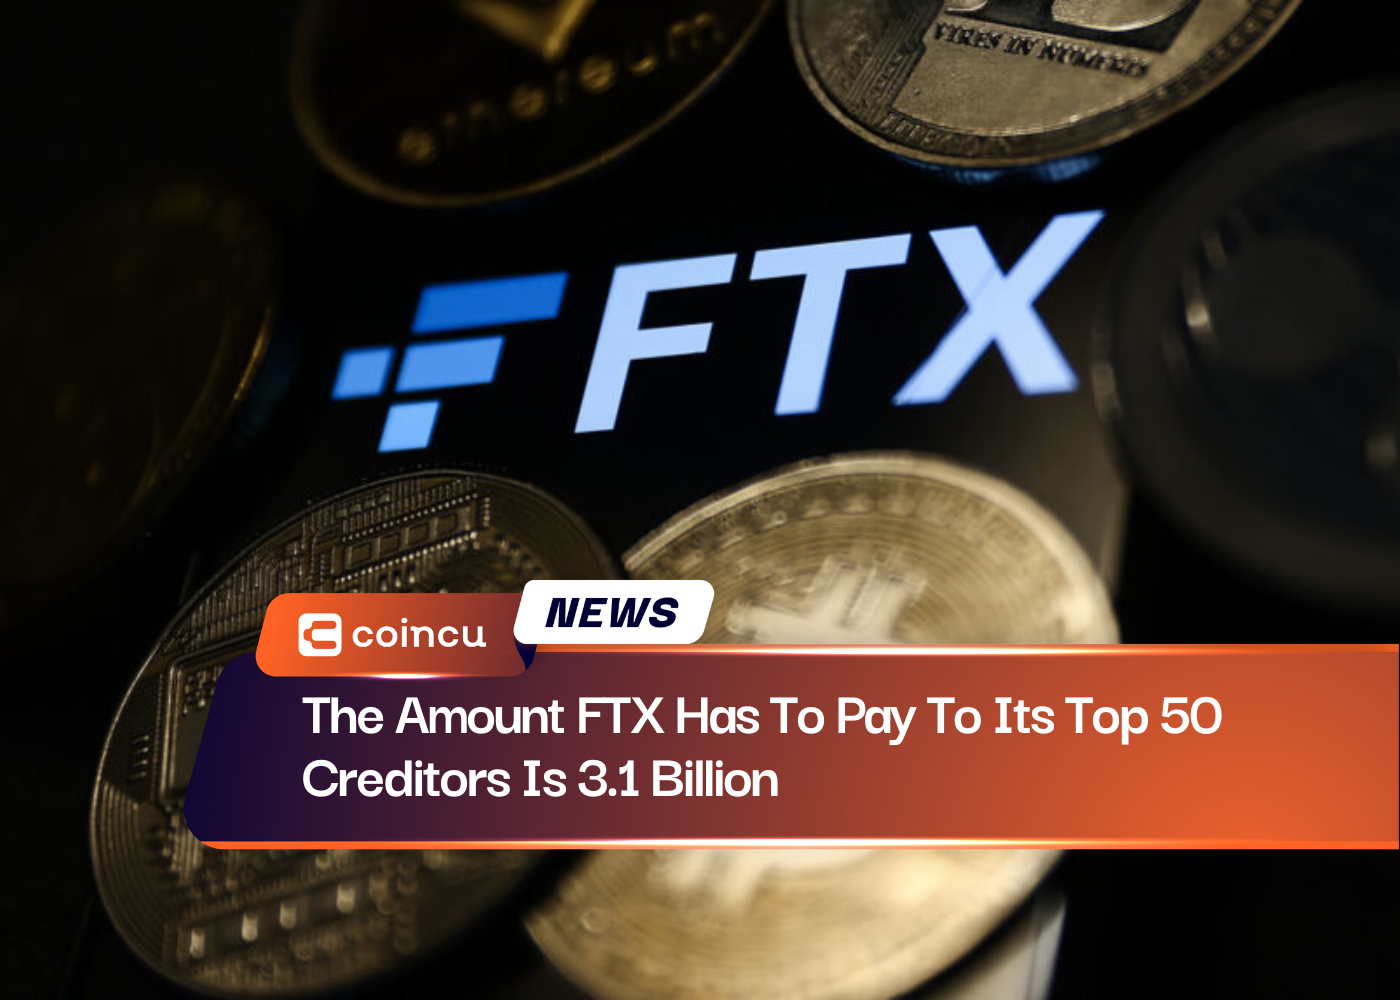 La cantidad que FTX tiene que pagar a sus 50 principales acreedores es de 3.1 millones